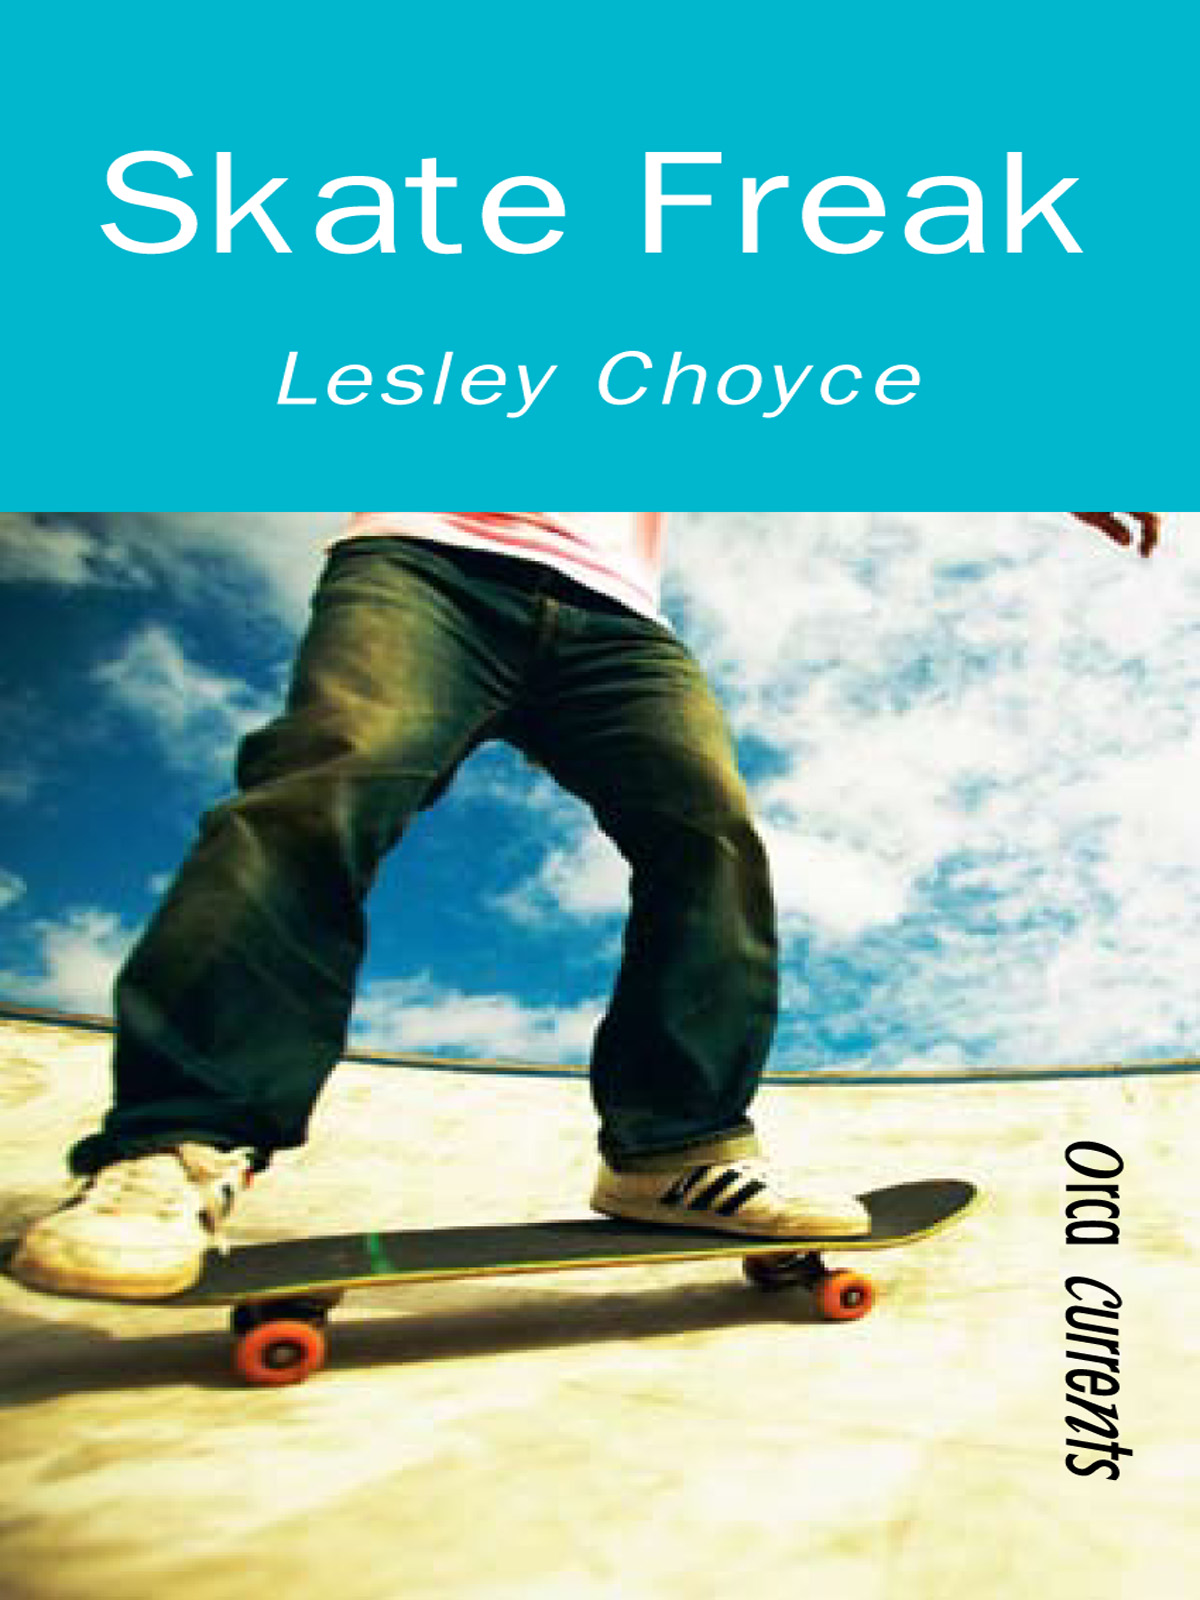 Skate Freak (2008) by Lesley Choyce